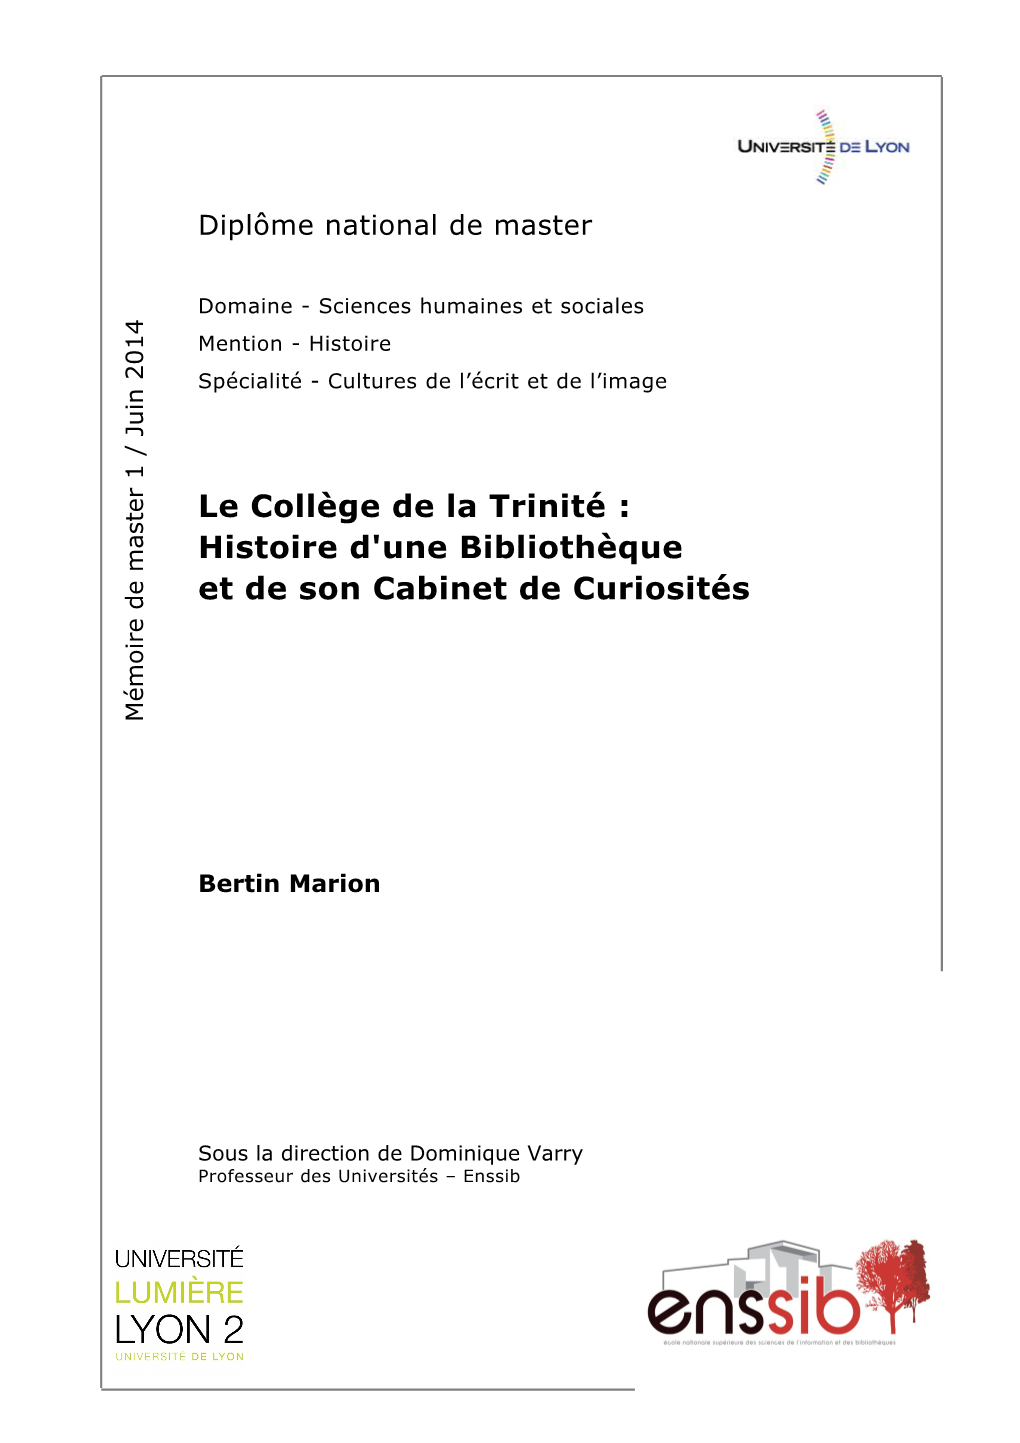 Le Collège De La Trinité : Histoire D'une Bibliothèque Et De Son